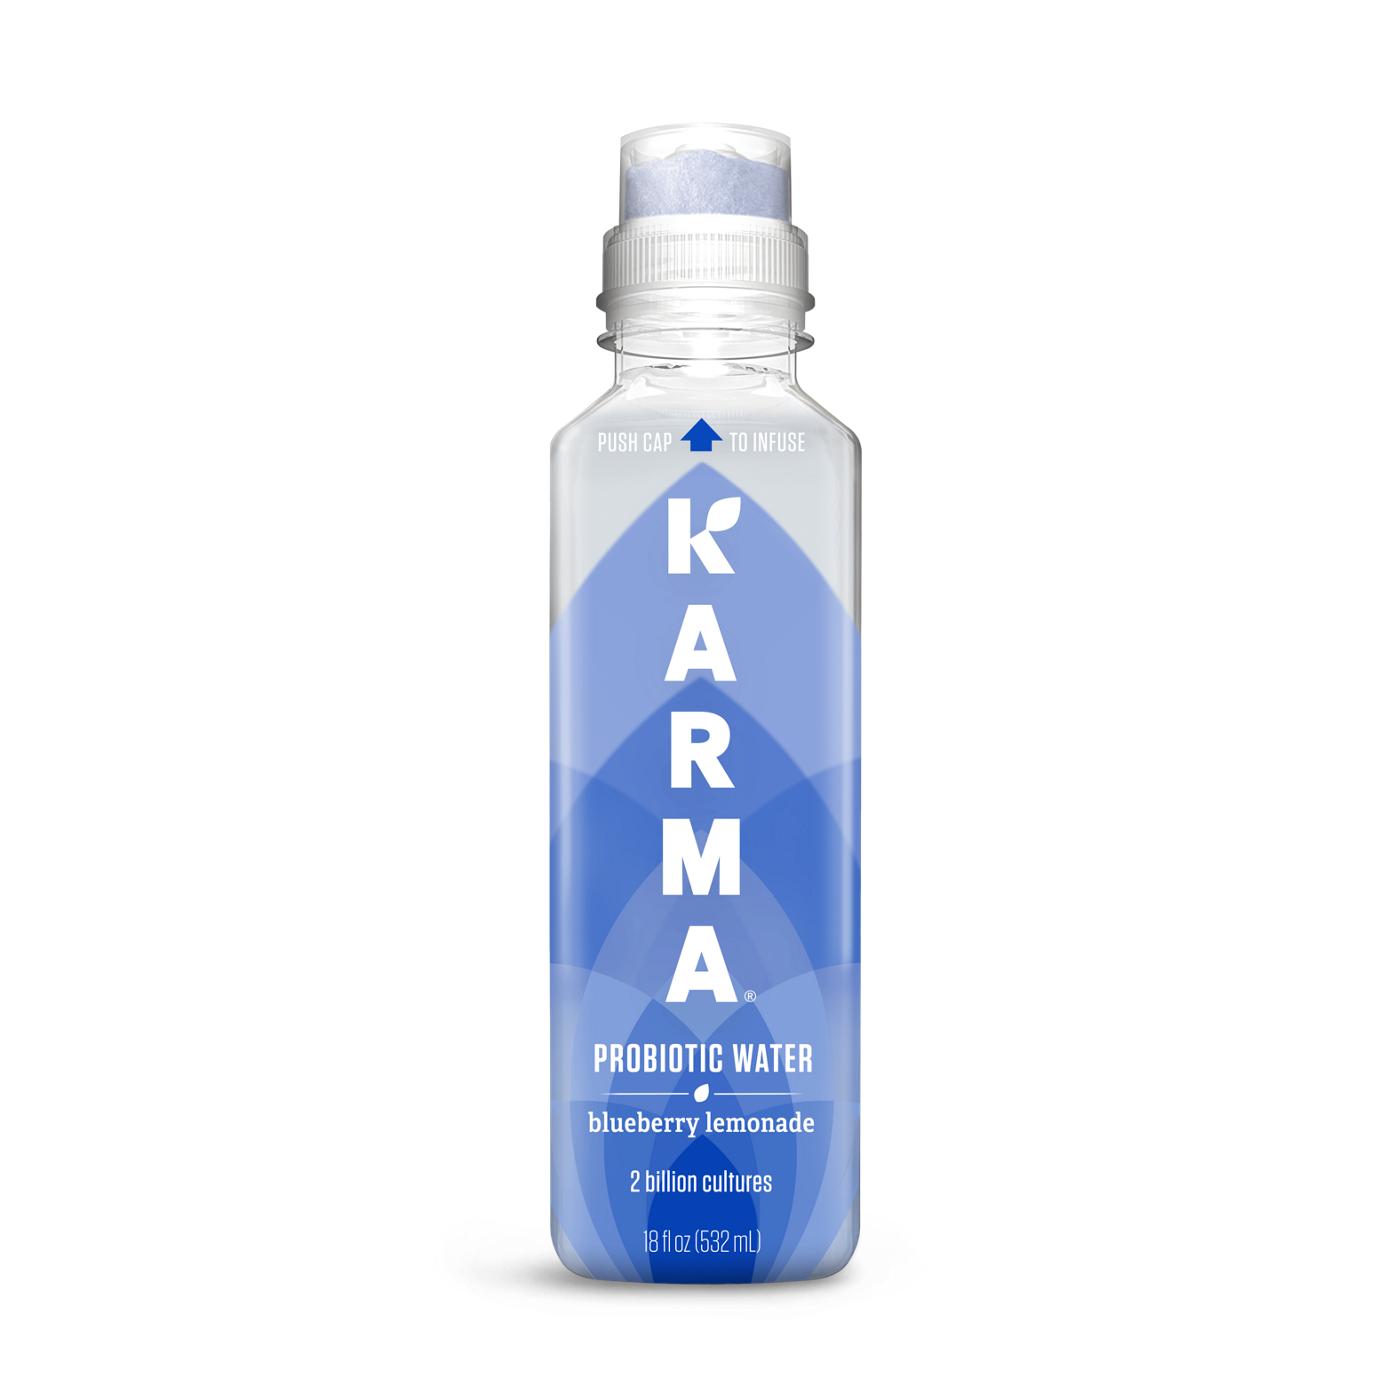 Karma Blueberry Lemonade Probiotic Water; image 1 of 3